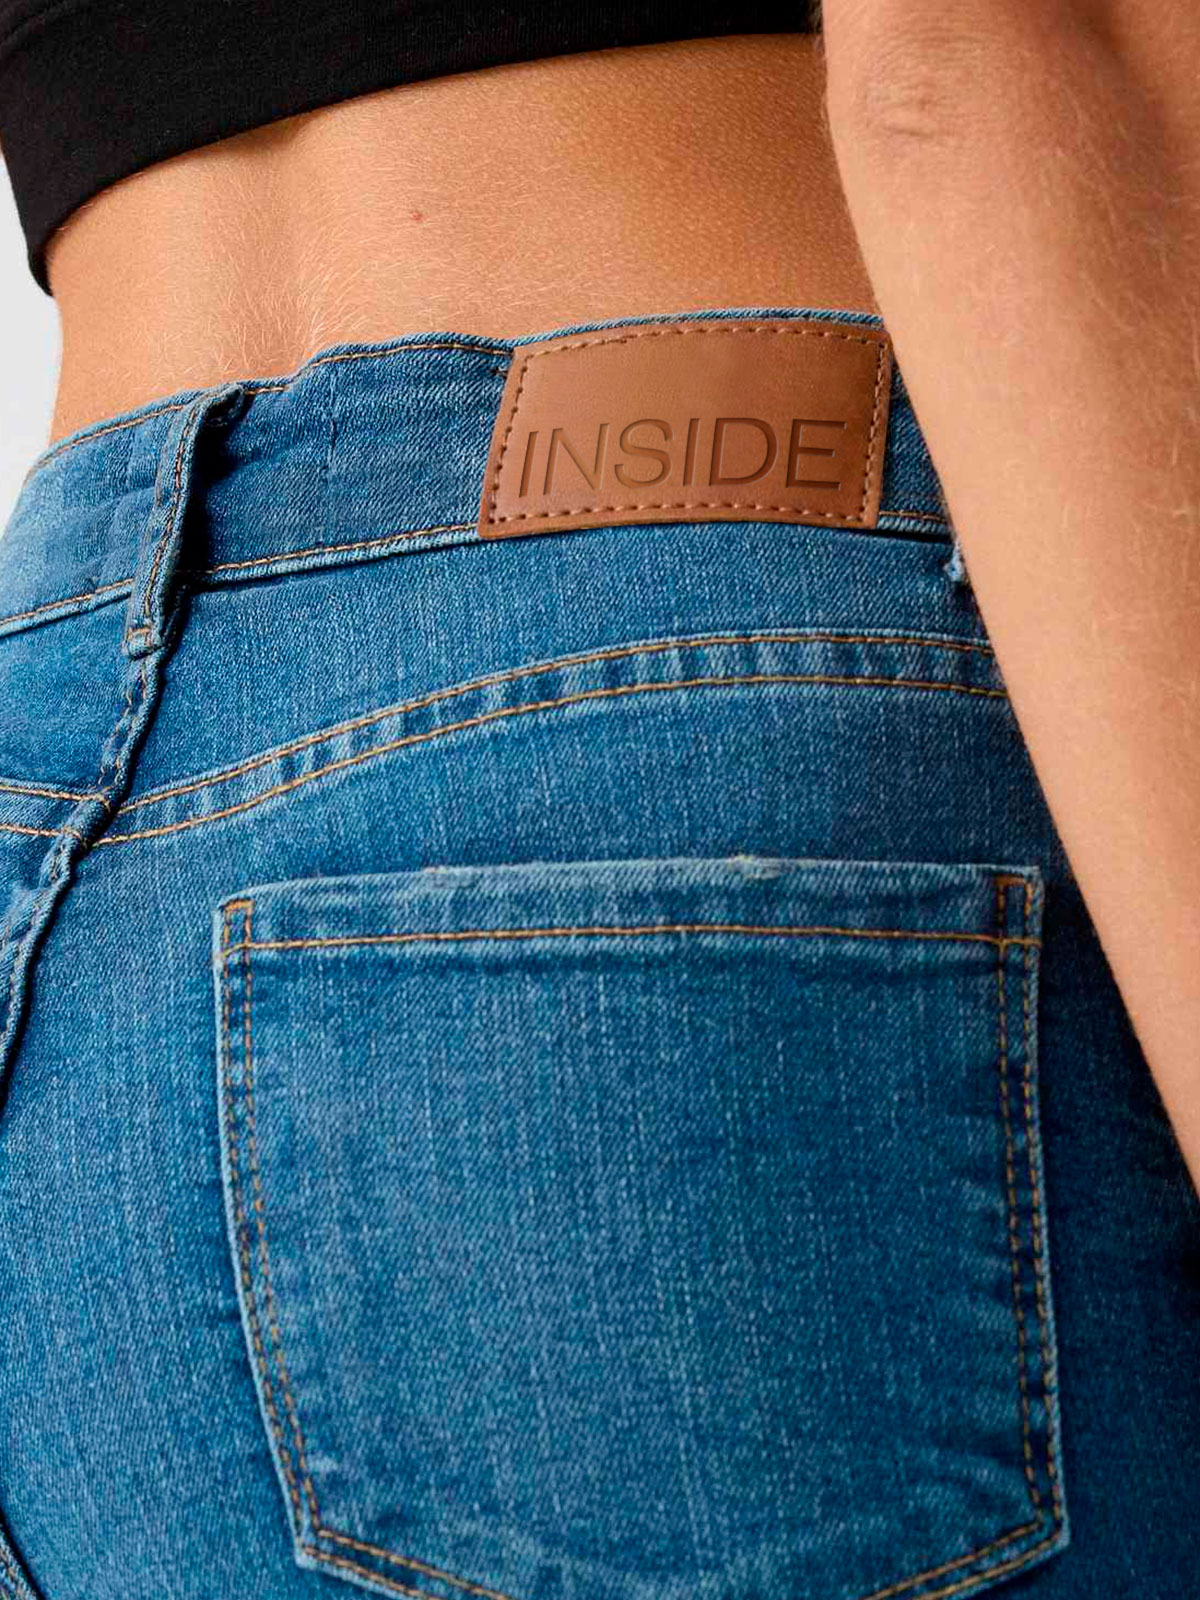 INSIDE_jeans